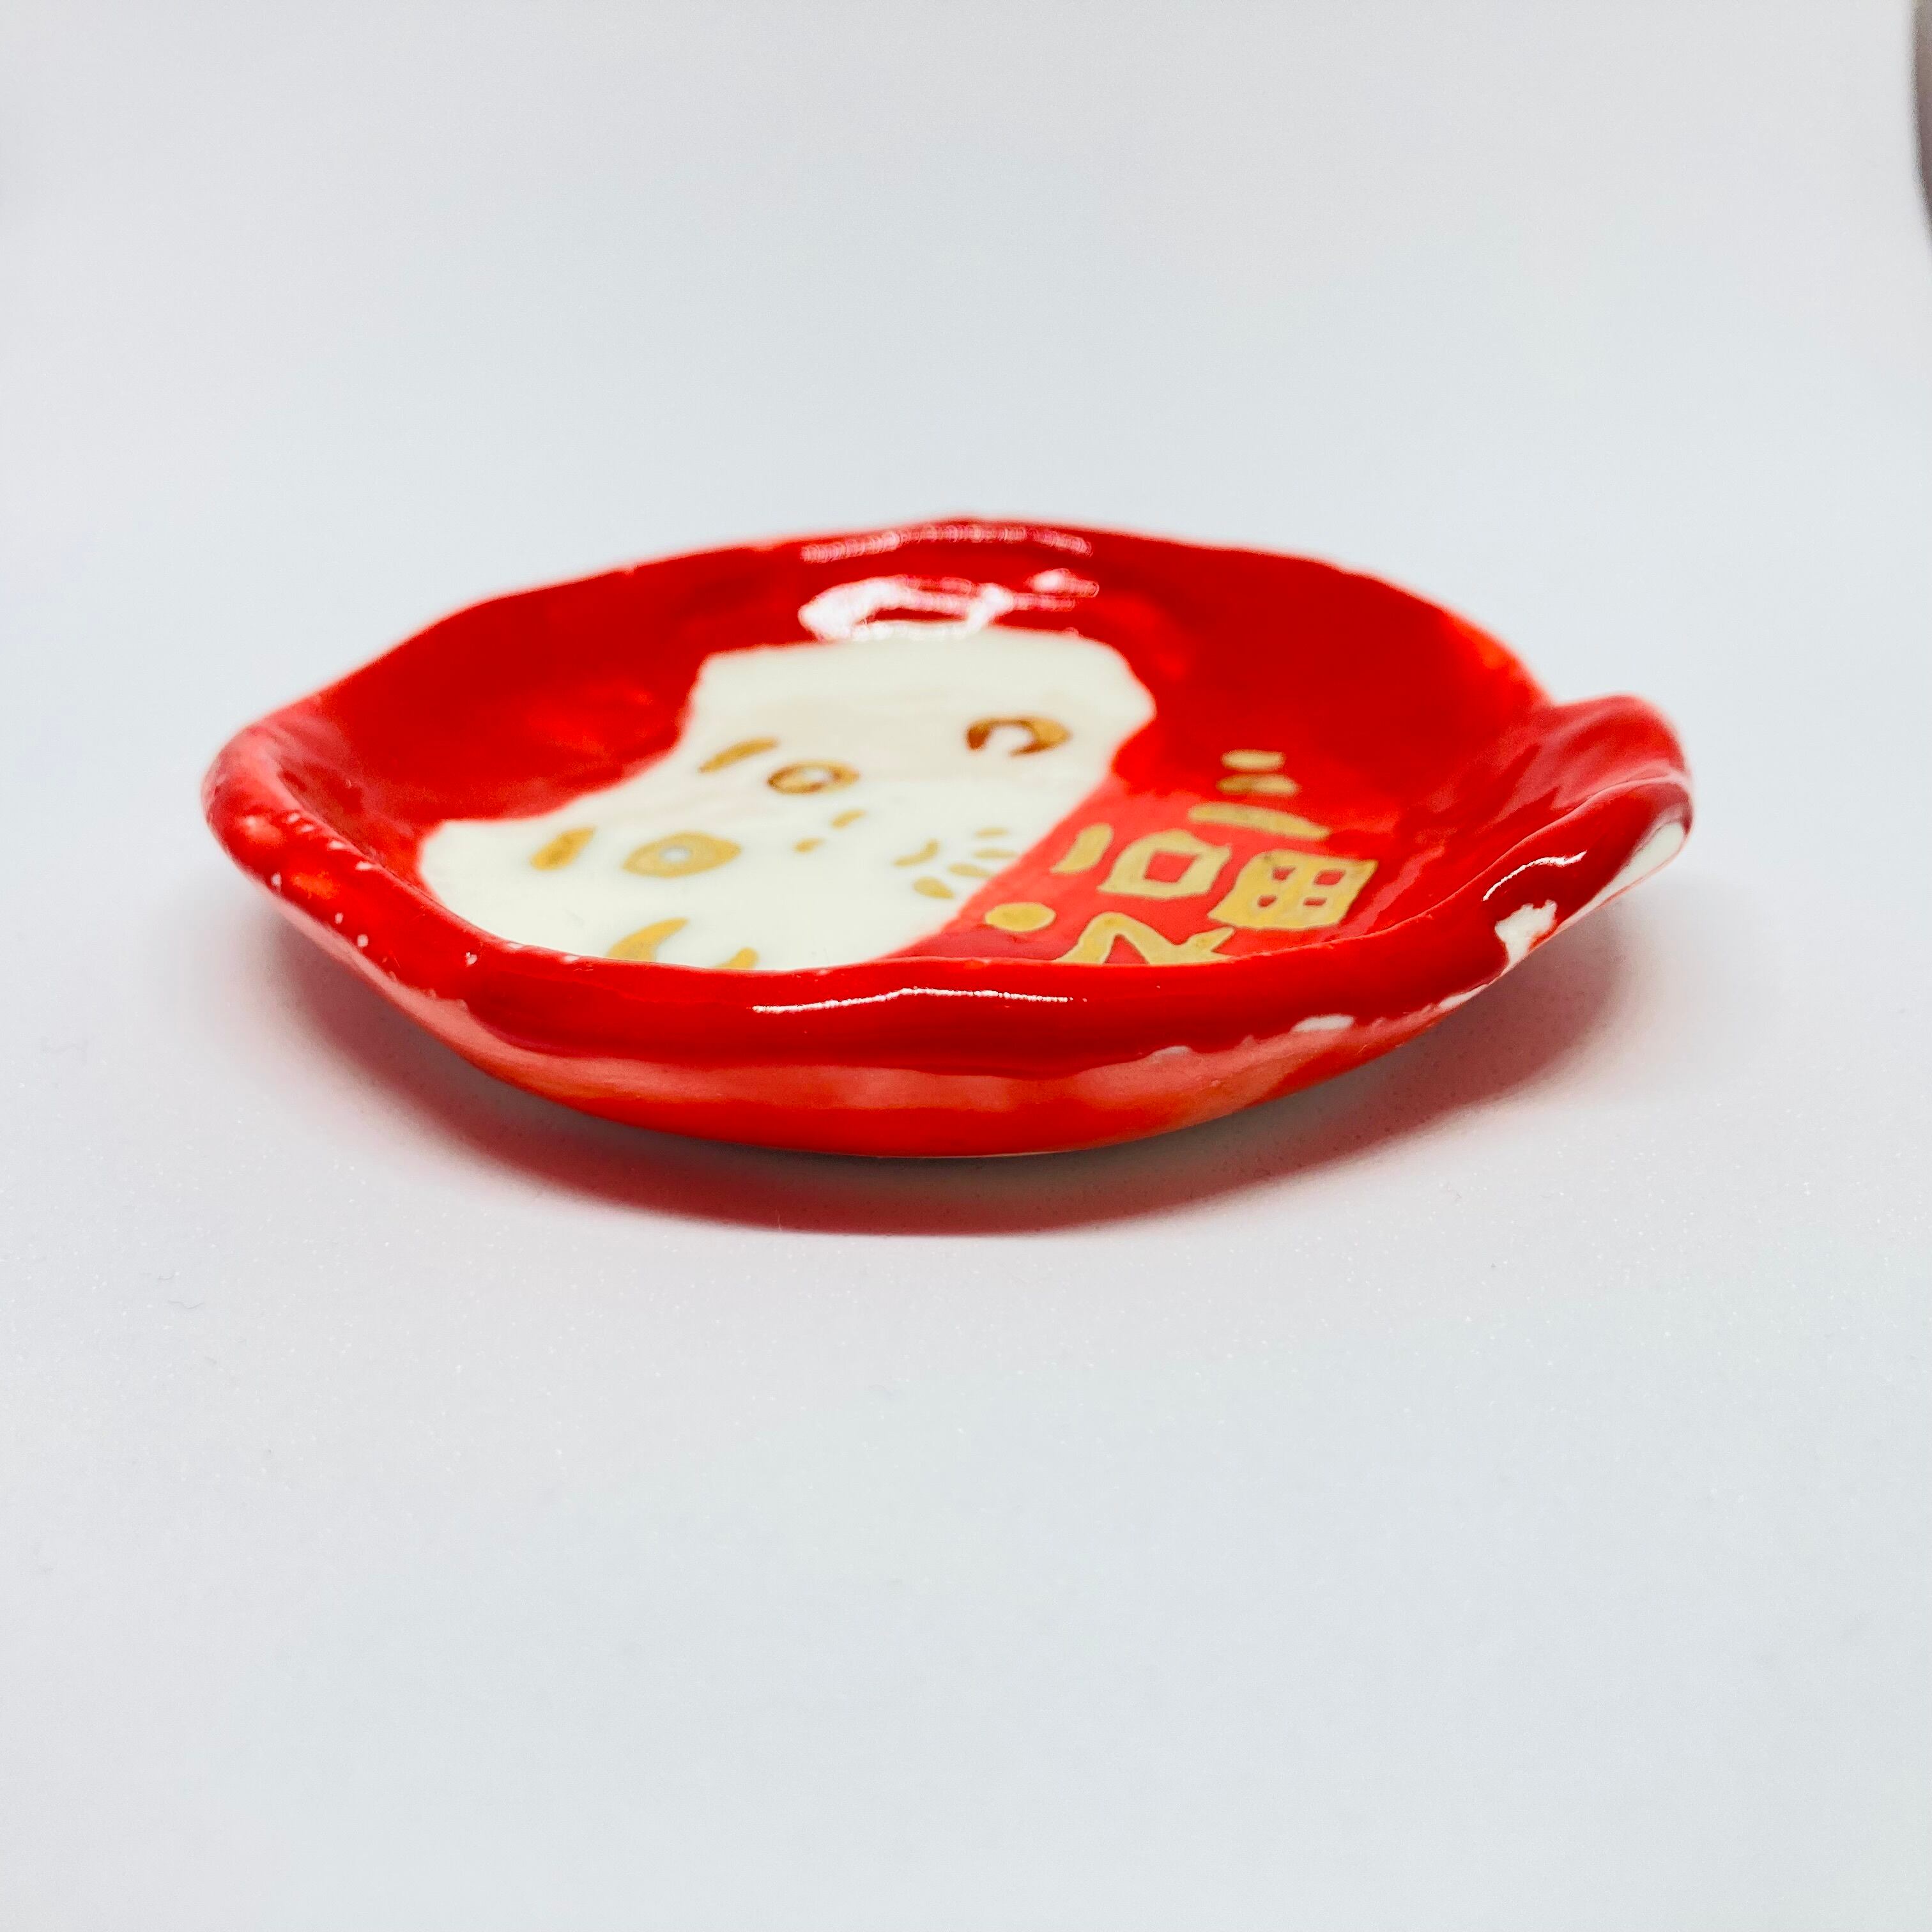 だるまの豆皿(赤) / すずきたまみ / 陶芸作品